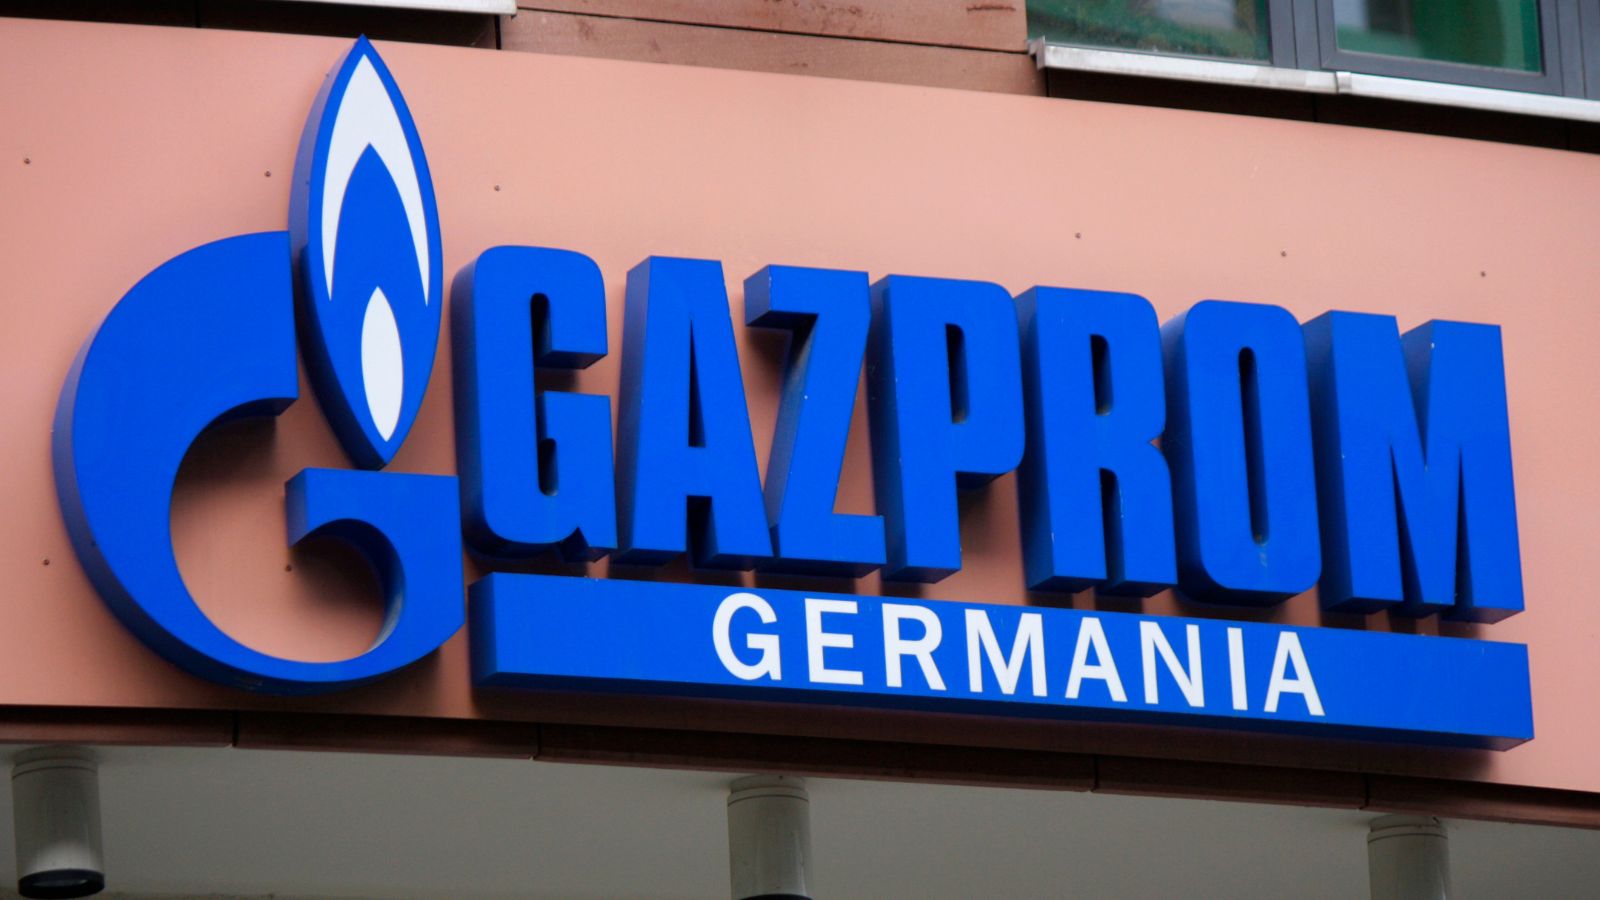 Regierung will Gazprom Germania mit Milliardenkredit sichern